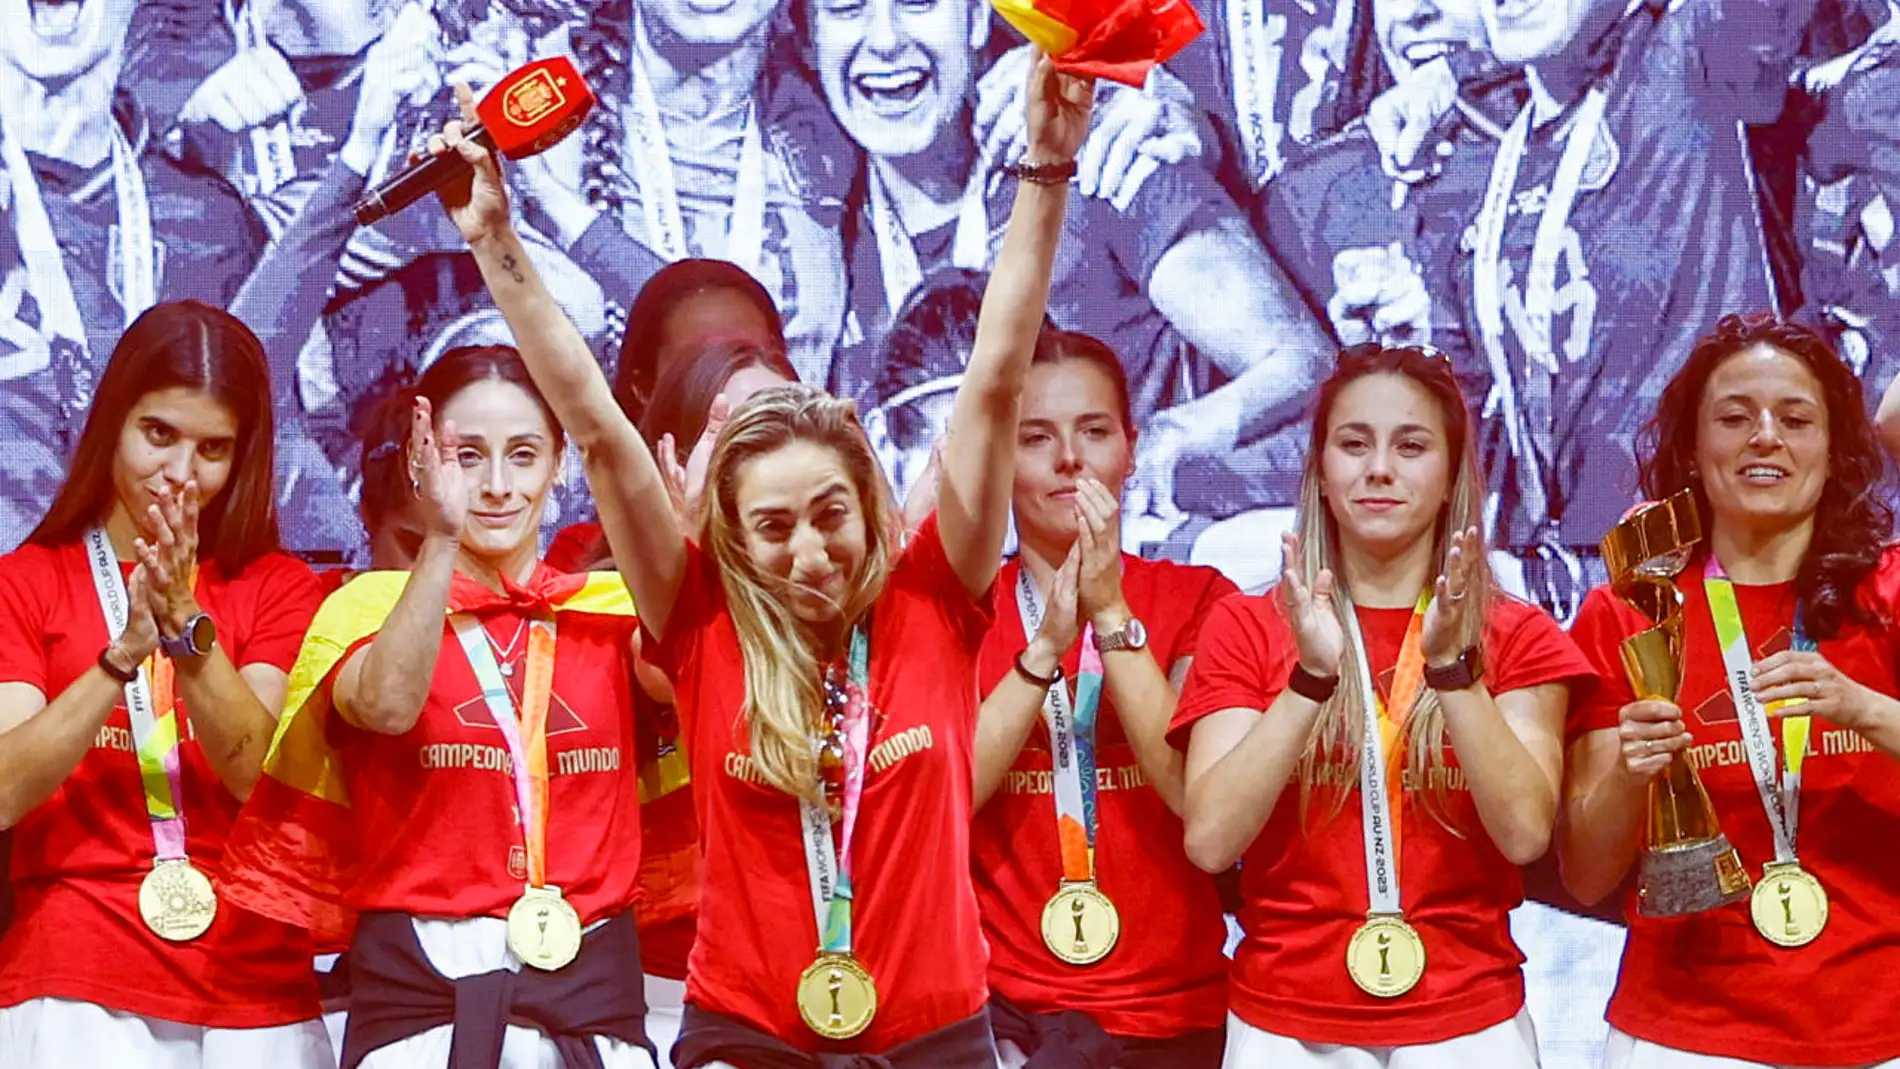 La defensa de selección española femenina de fútbol, Olga Carmona, saluda